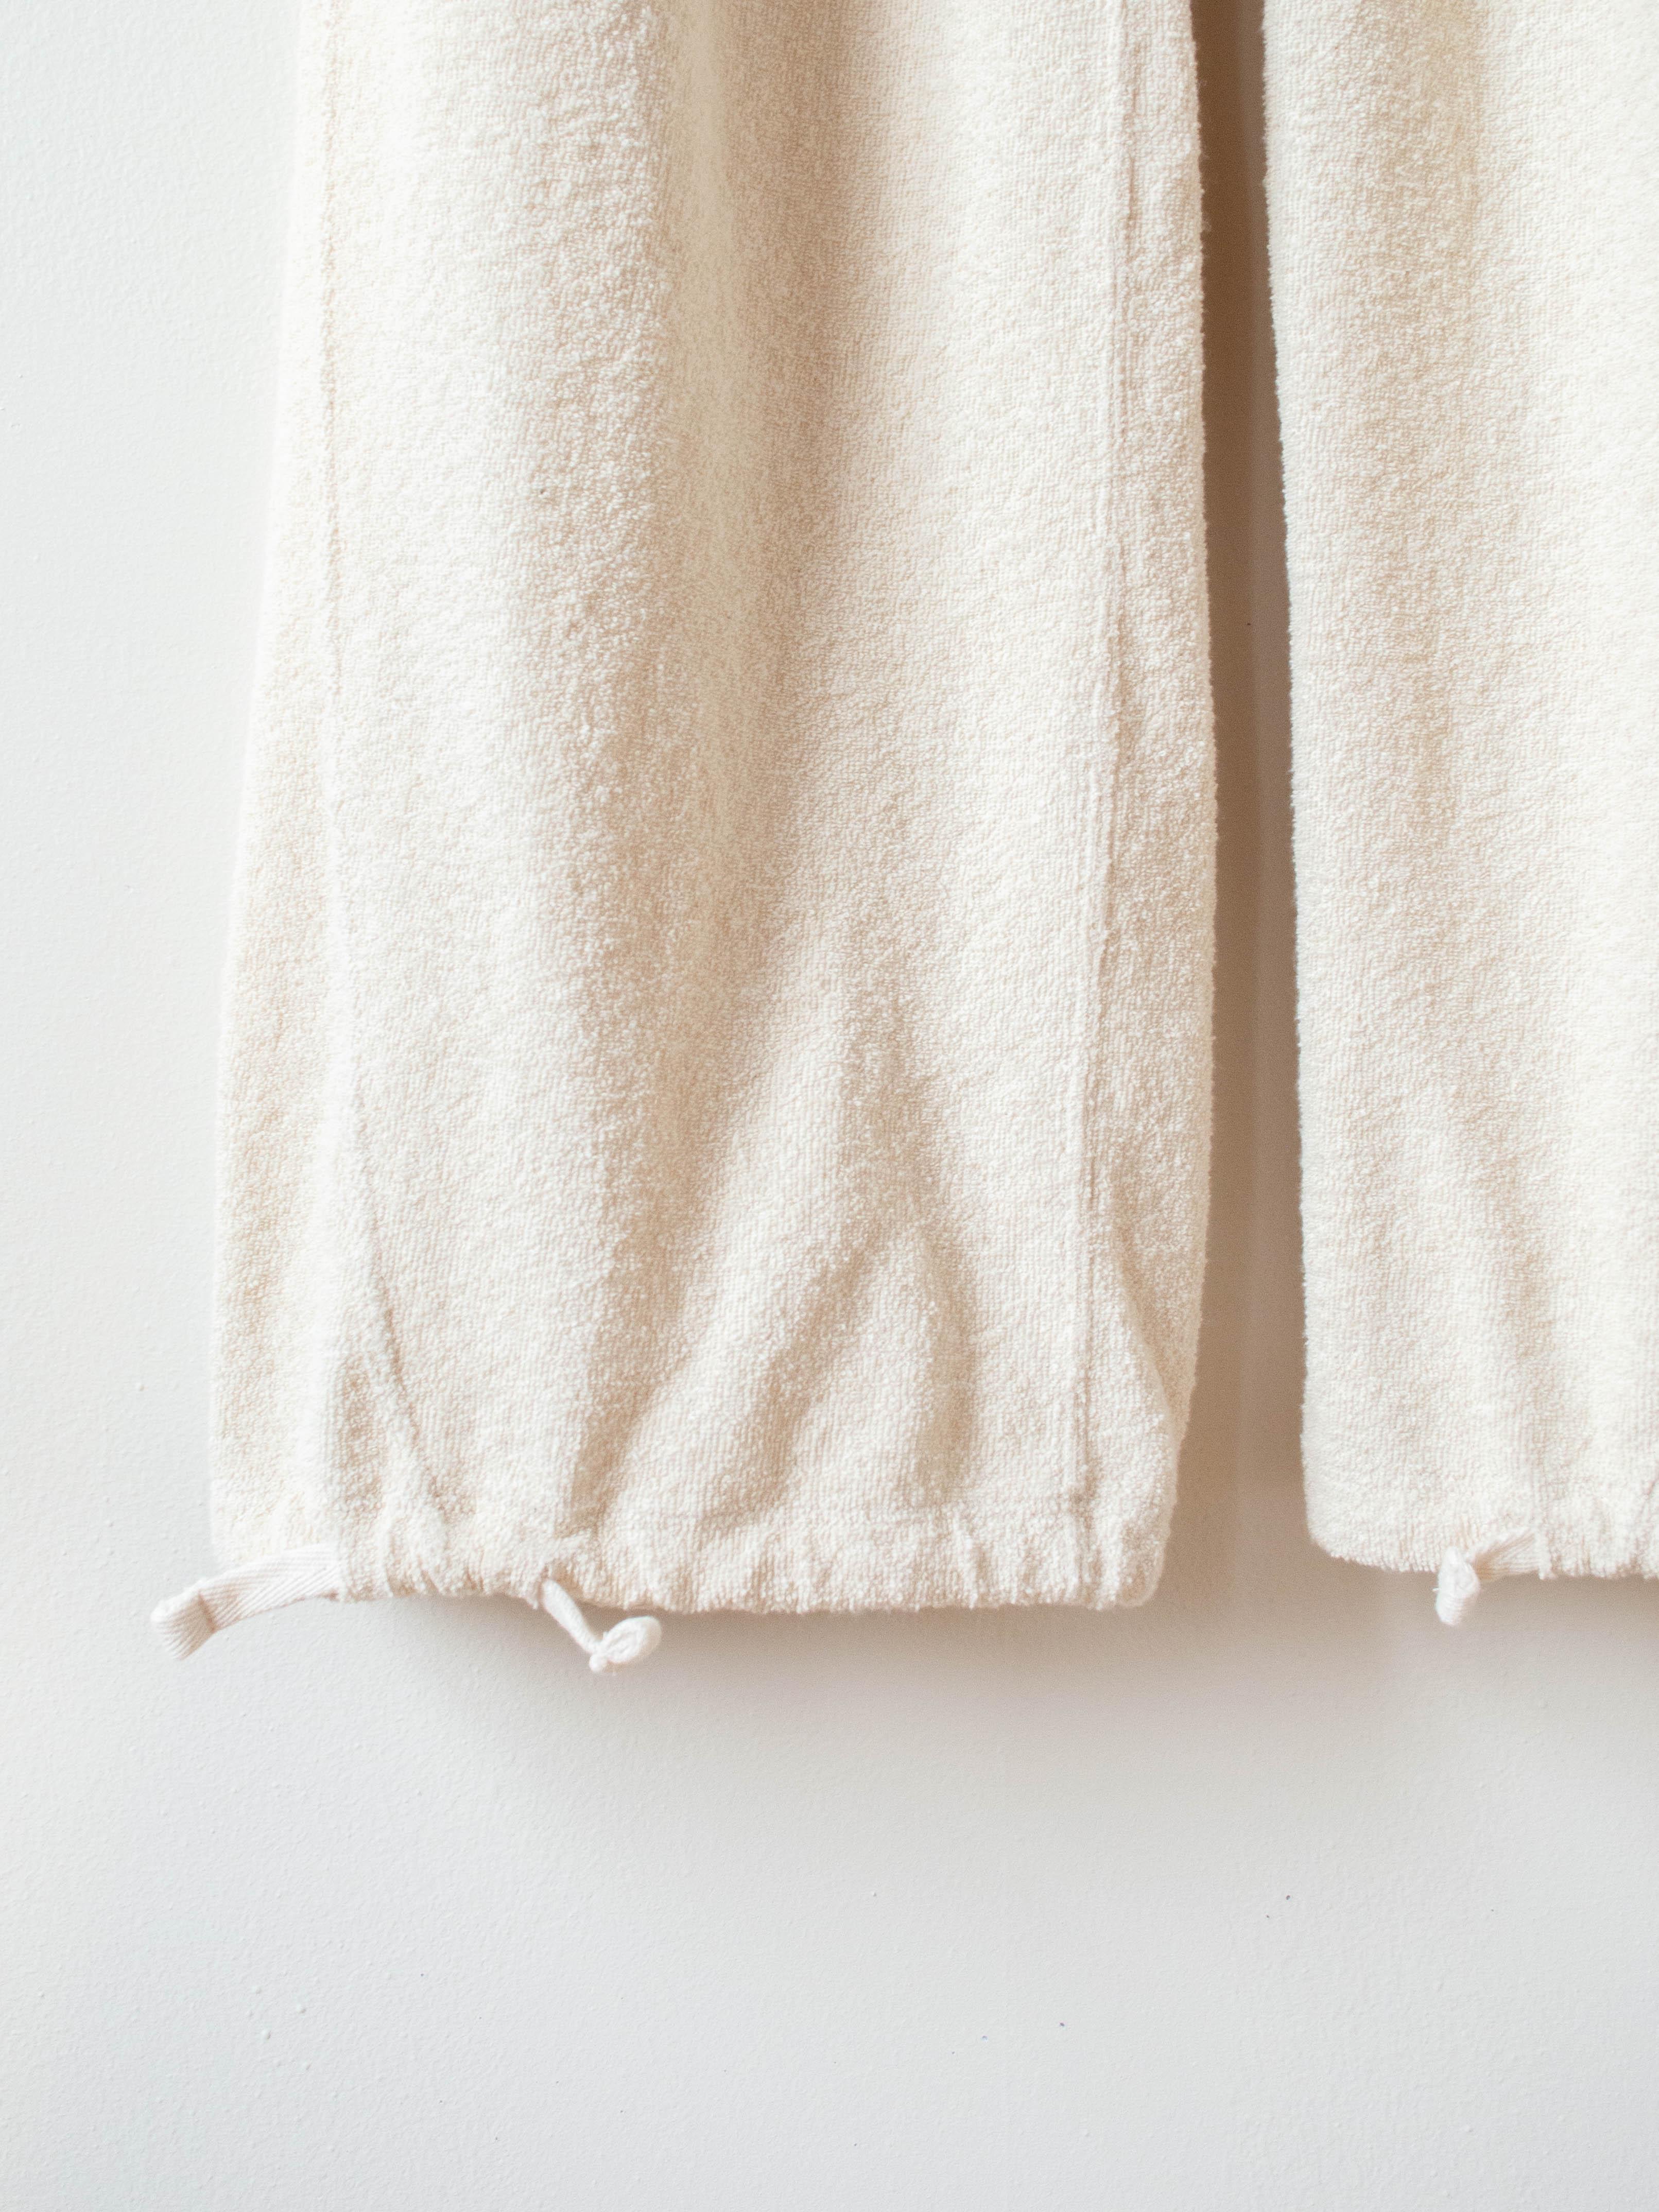 Namu Shop - Unfil Vintage Cotton Pile Wide Leg Pants - Natural